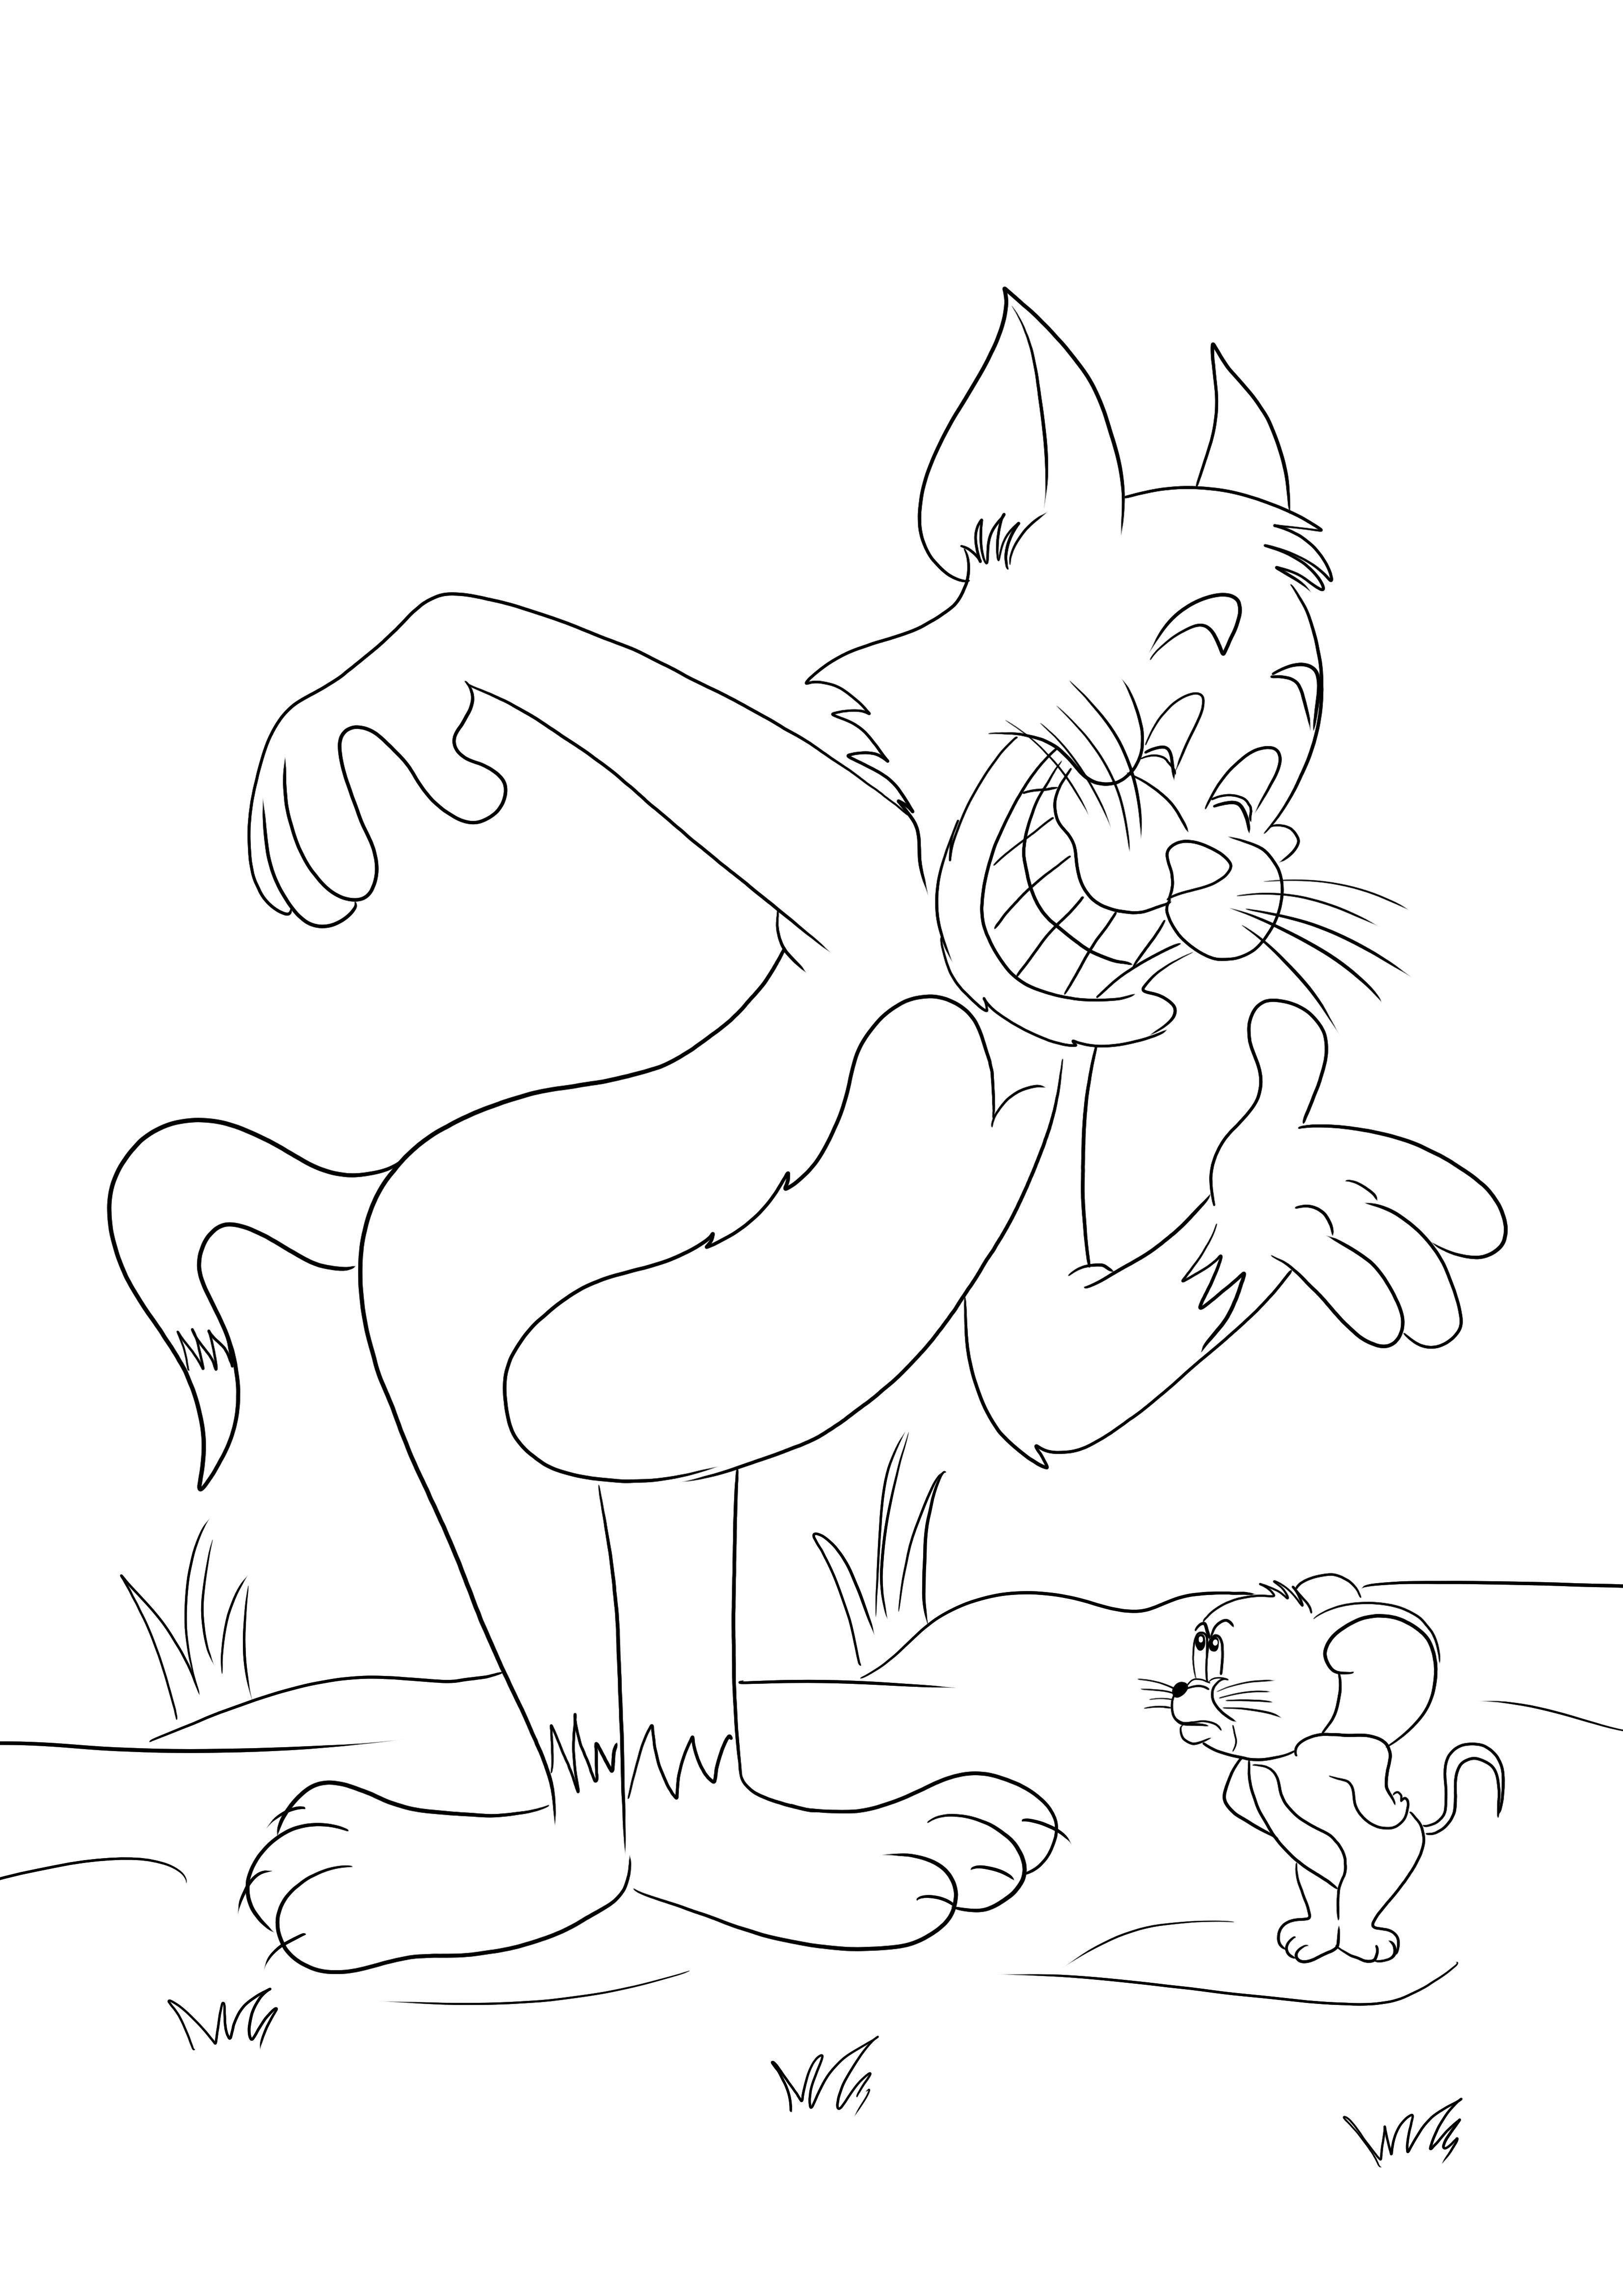 Cetak gratis Tom And Jerry berkelahi lagi untuk mewarnai anak-anak dengan mudah